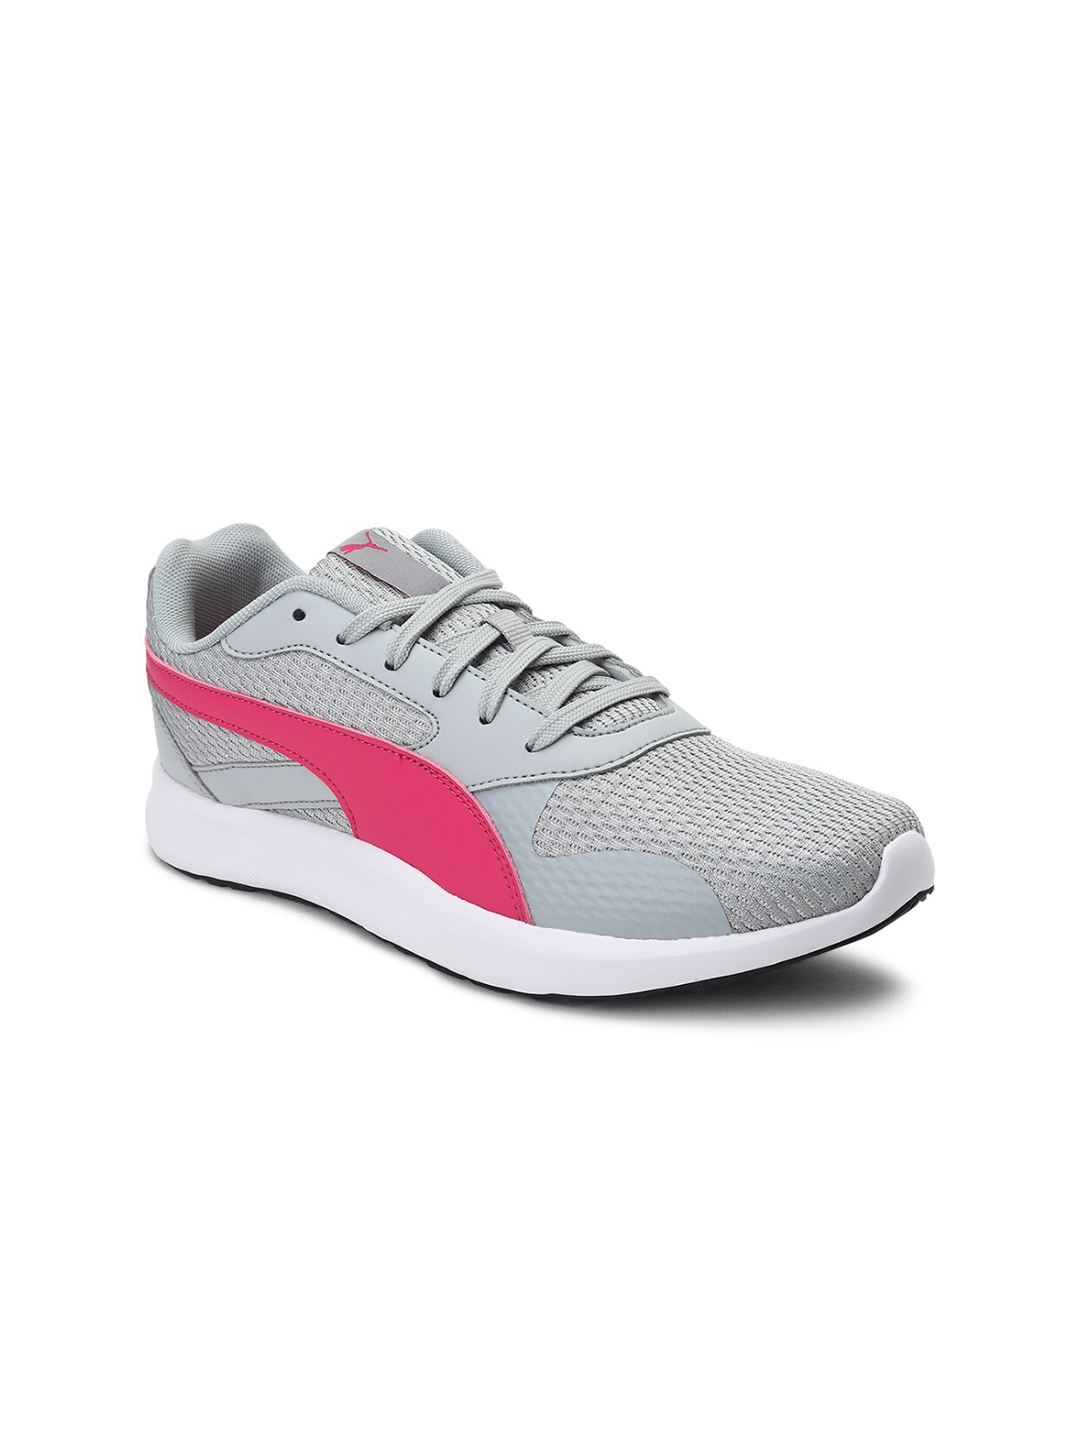 Buy Puma Women Grey Firefly Running Shoes - Sports Shoes for Women ...